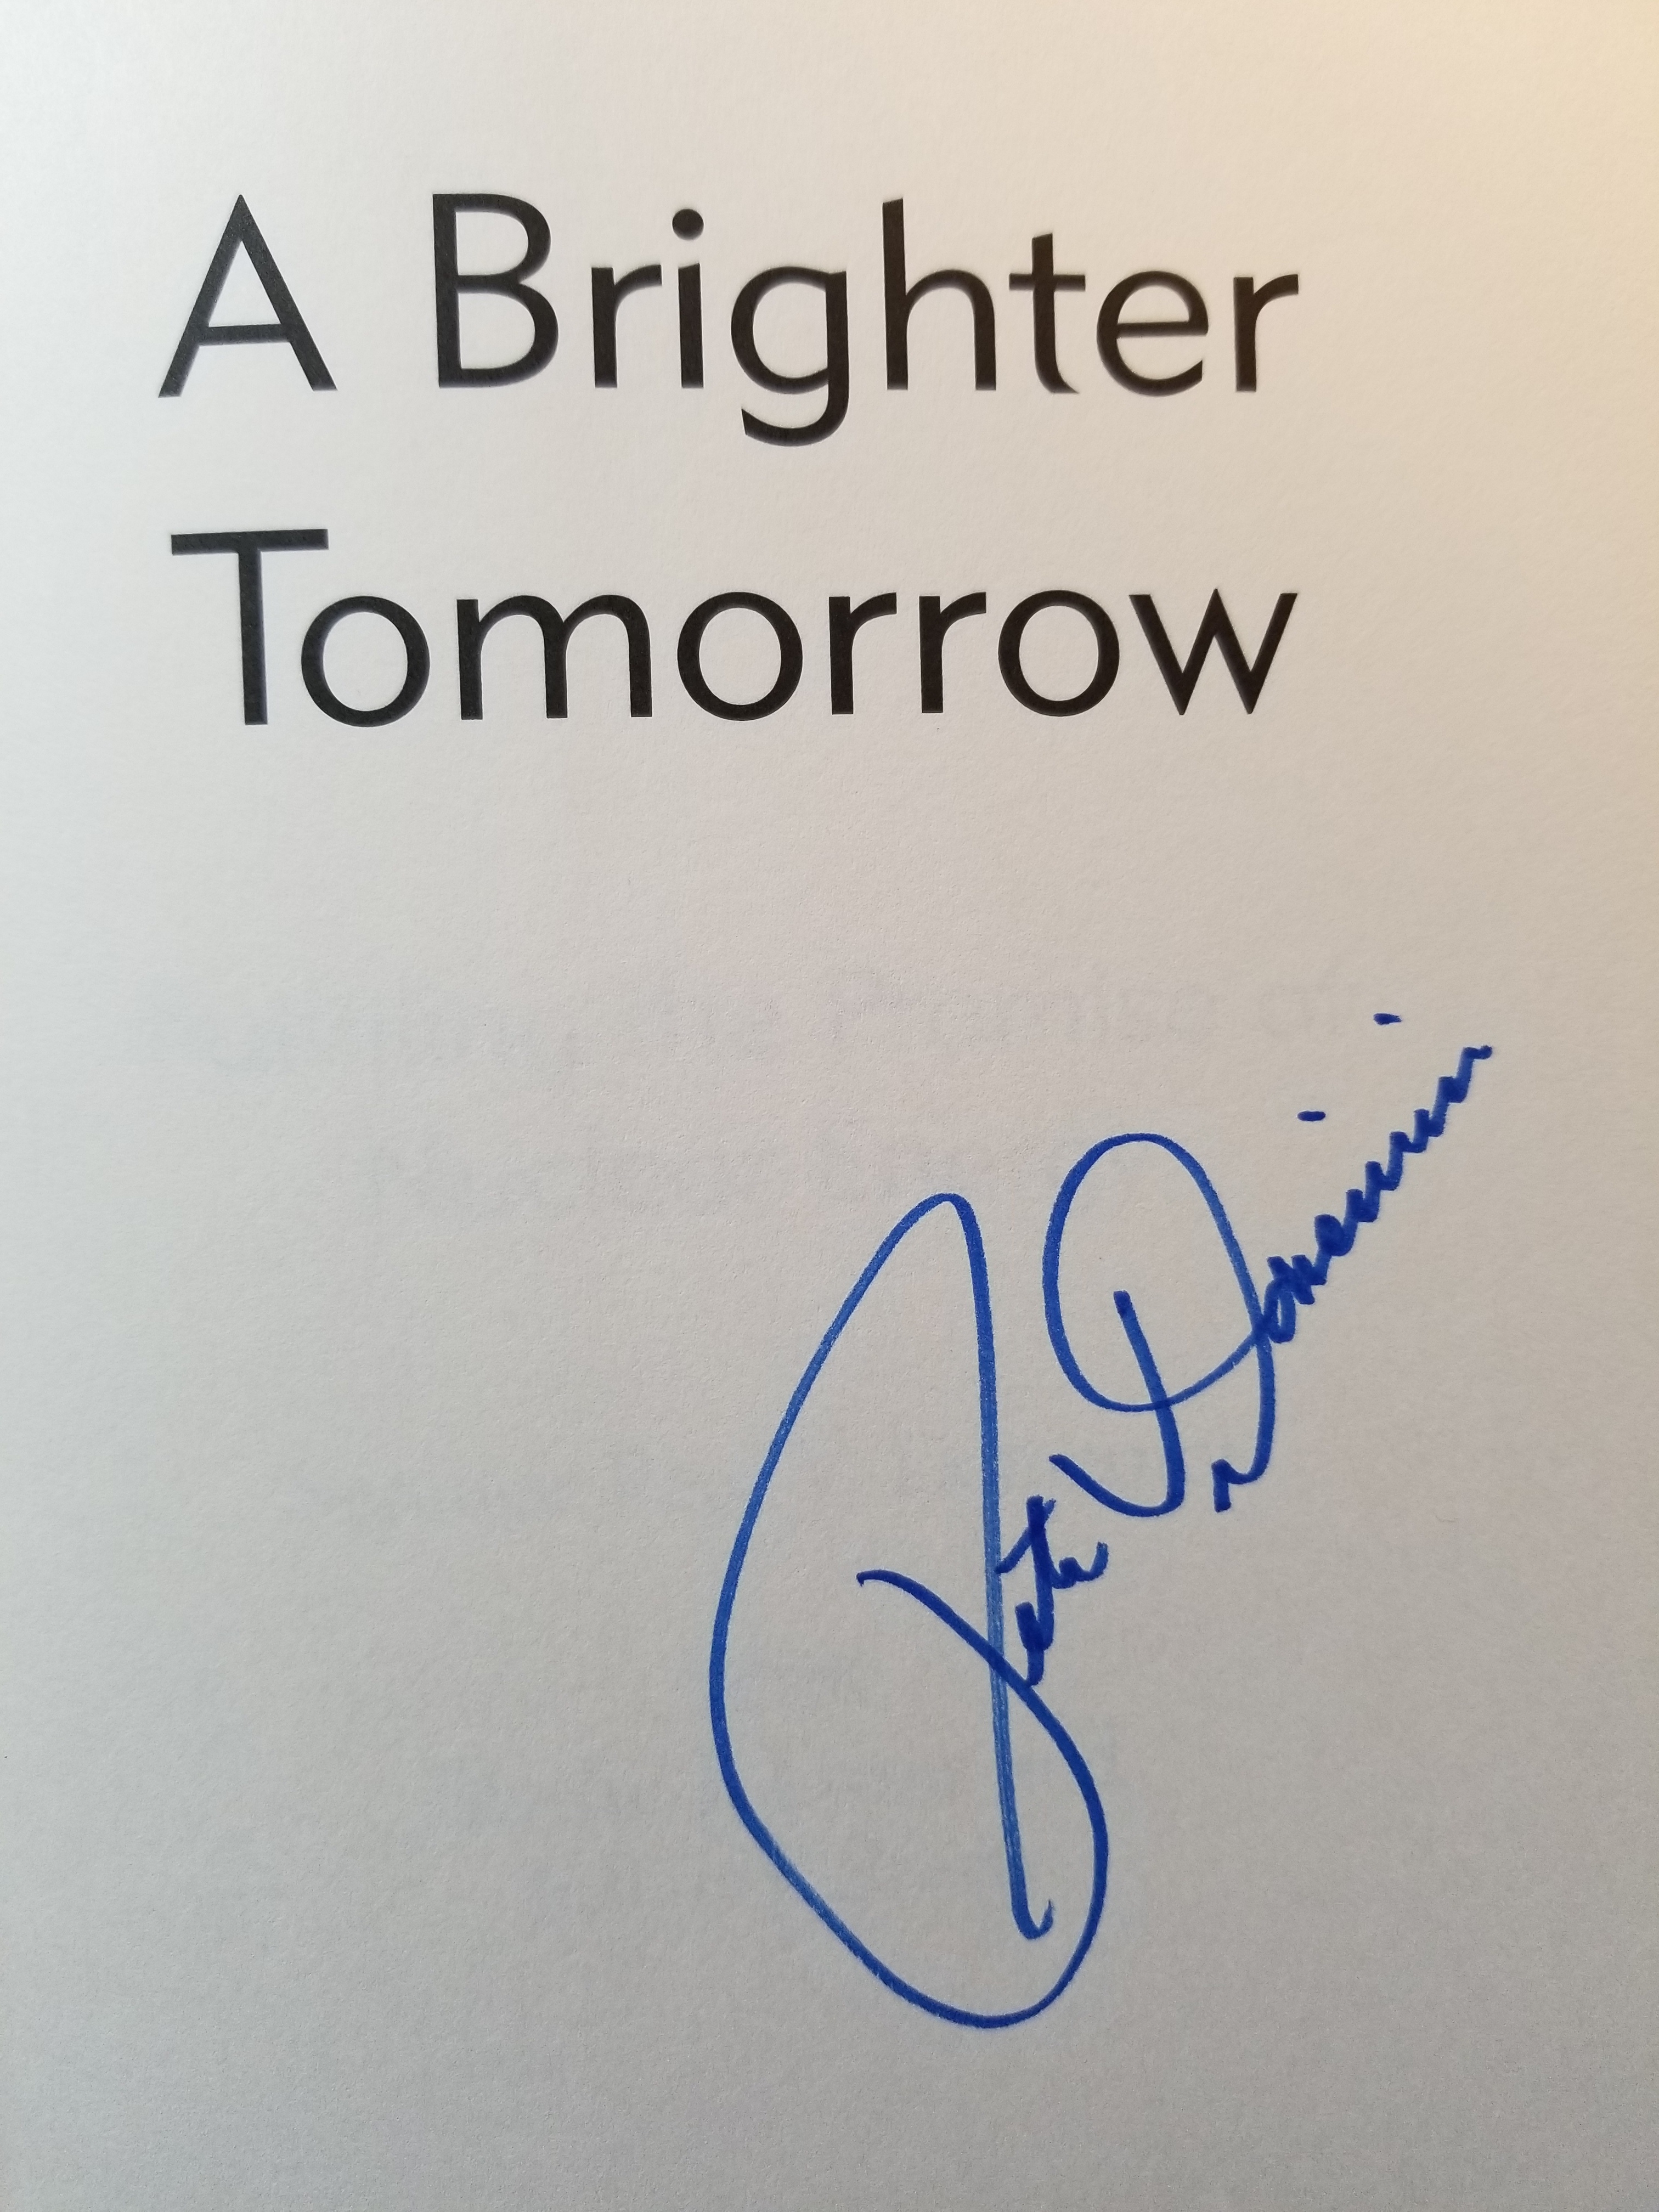 Senator Domenici's signature on my copy of A Brighter Tomorrow